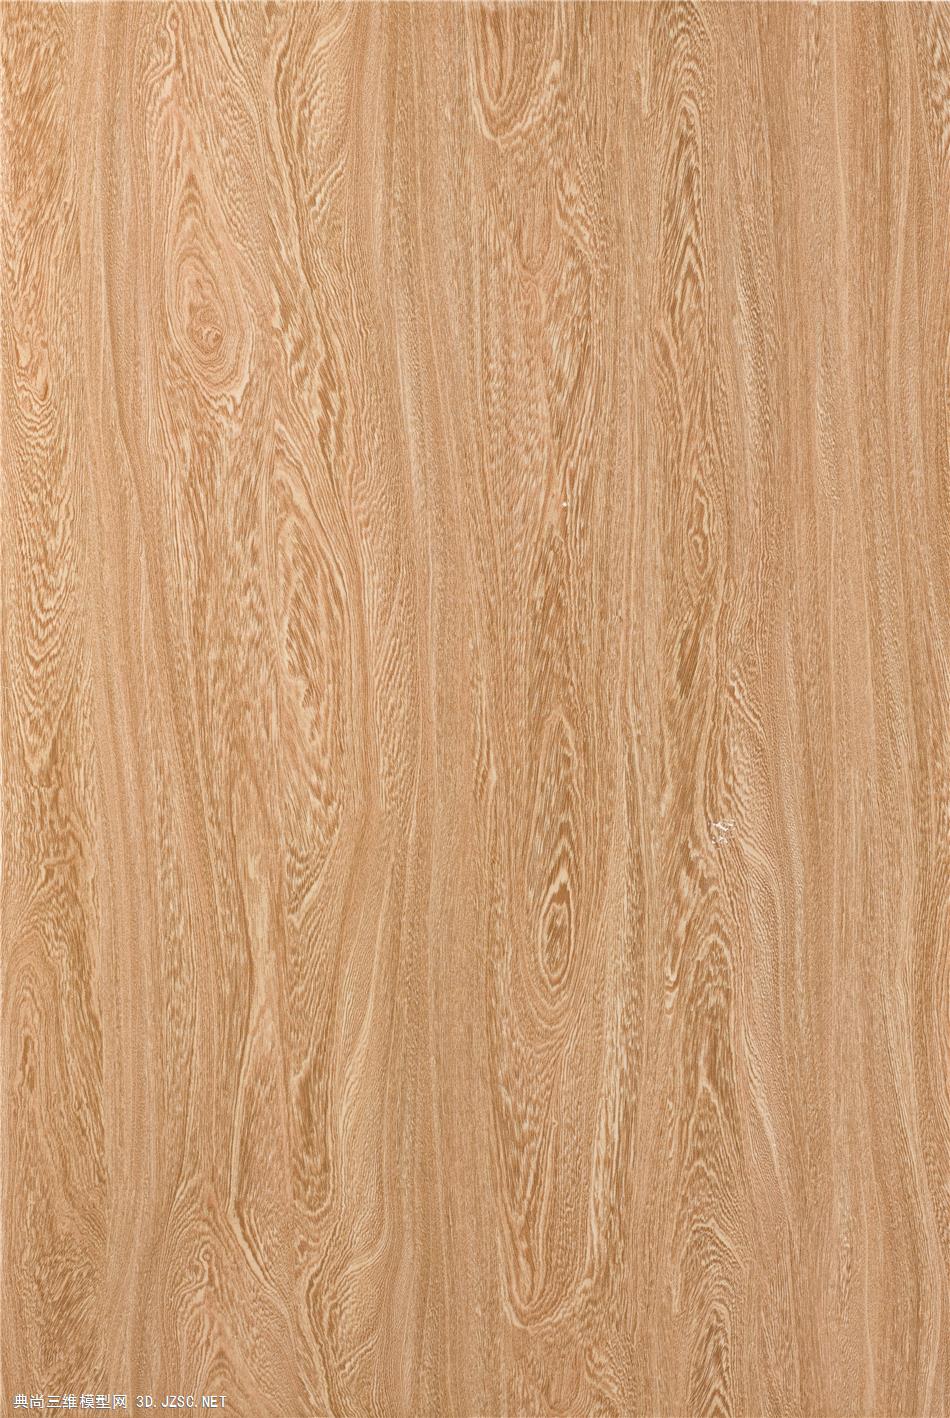 木材贴图木纹材质贴图